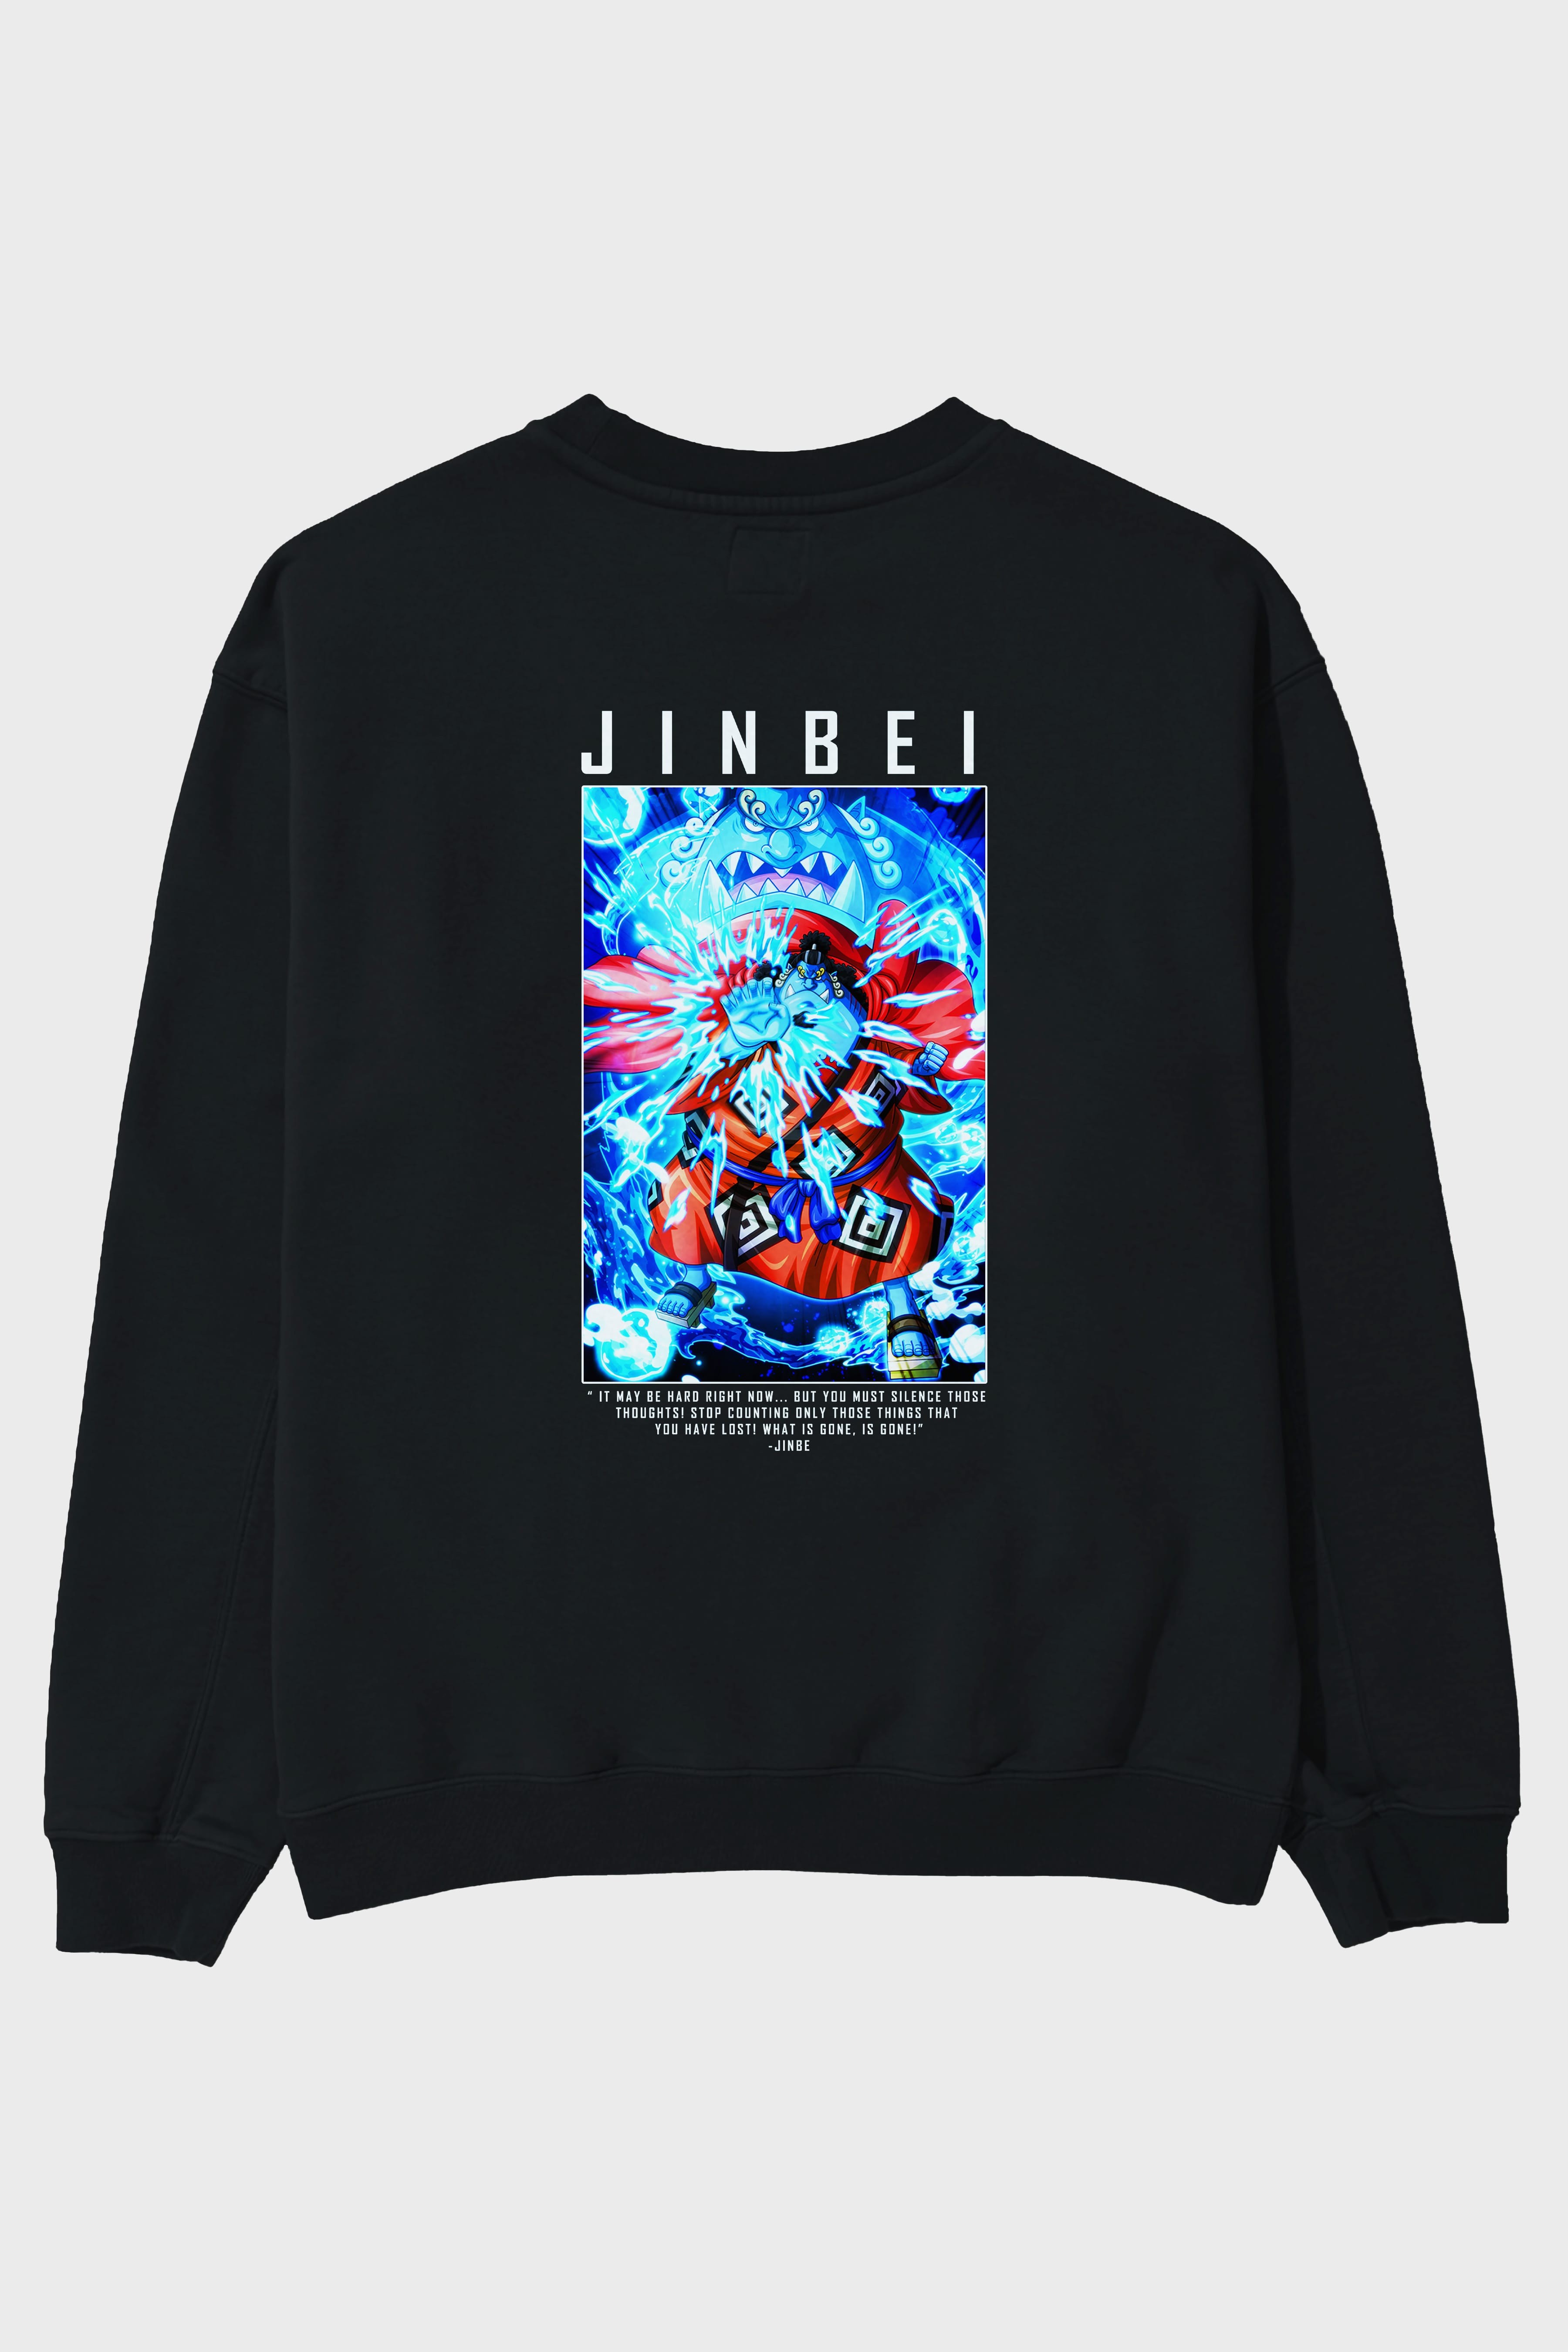 Jinbei Arka Baskılı Anime Oversize Sweatshirt Erkek Kadın Unisex